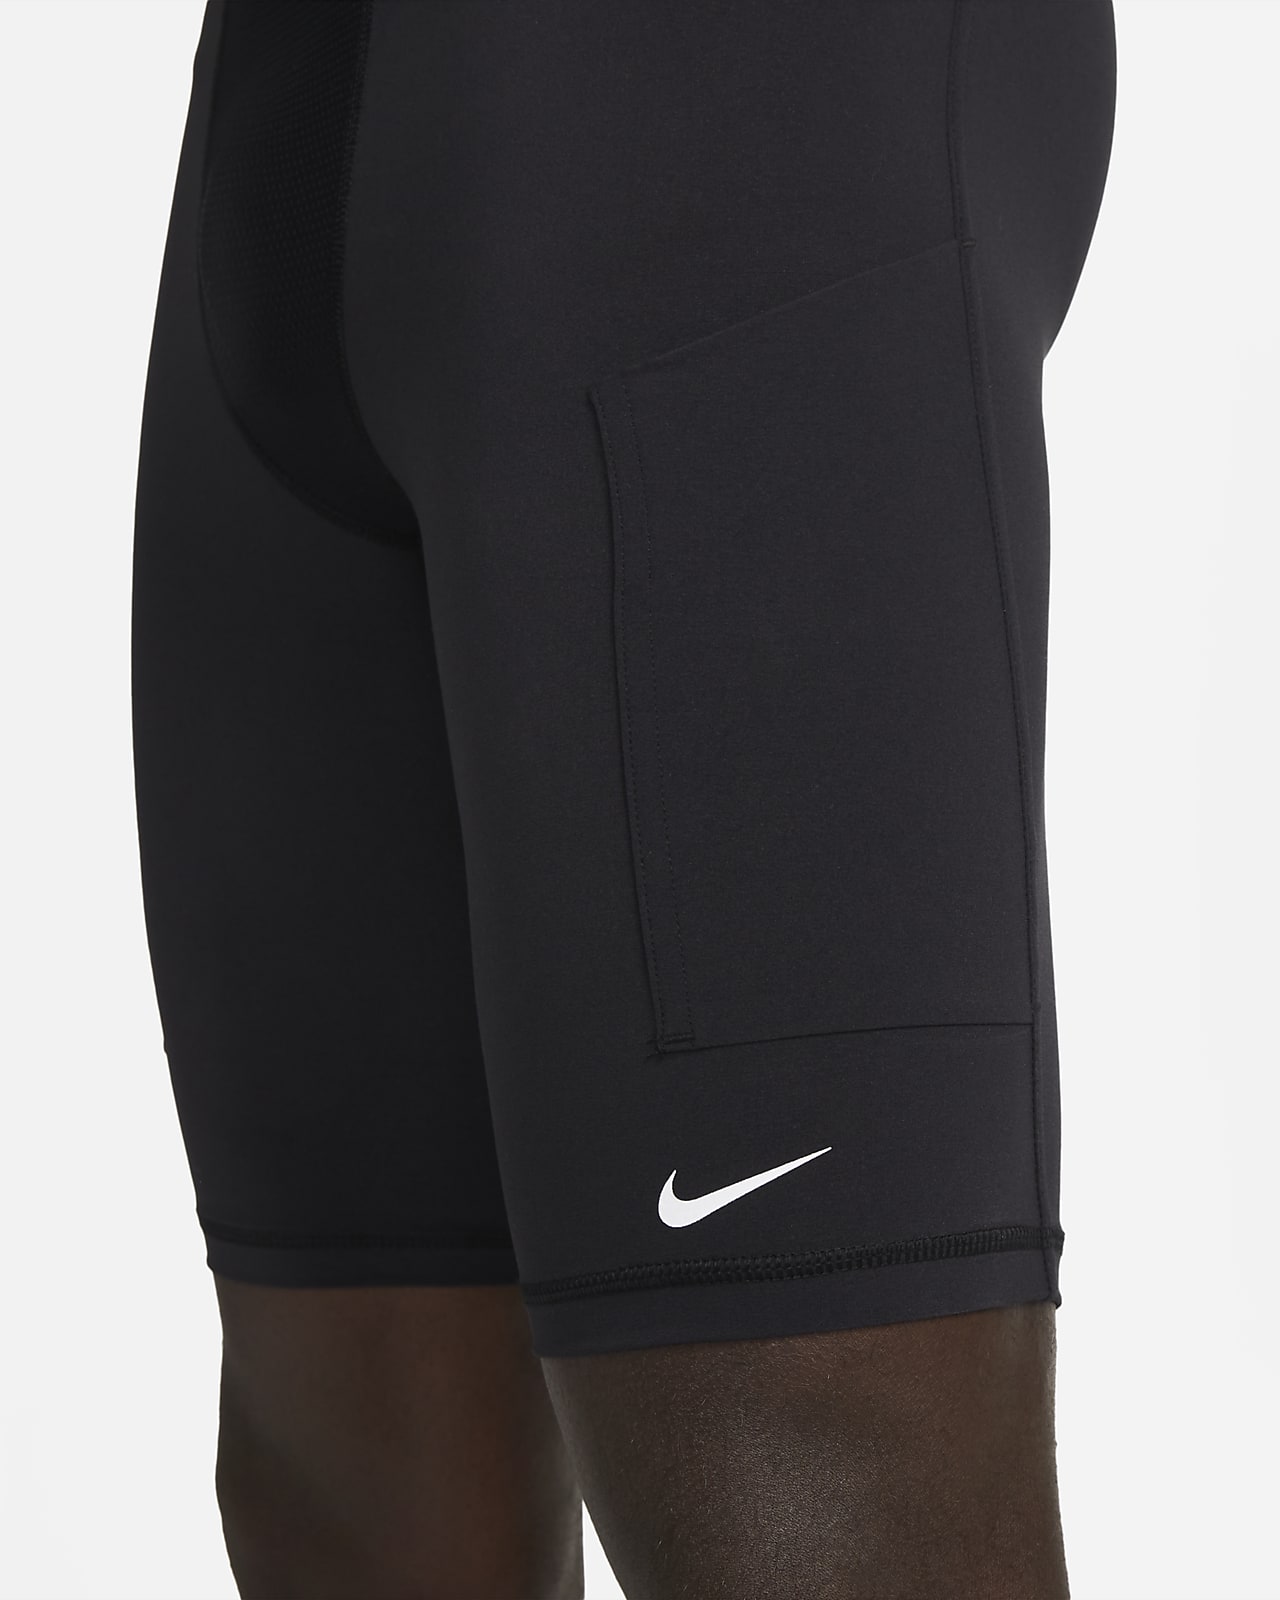 Nike Pro Long Shorts Black/White Dri Fit Workout Gym Men's Compression Base  NEW